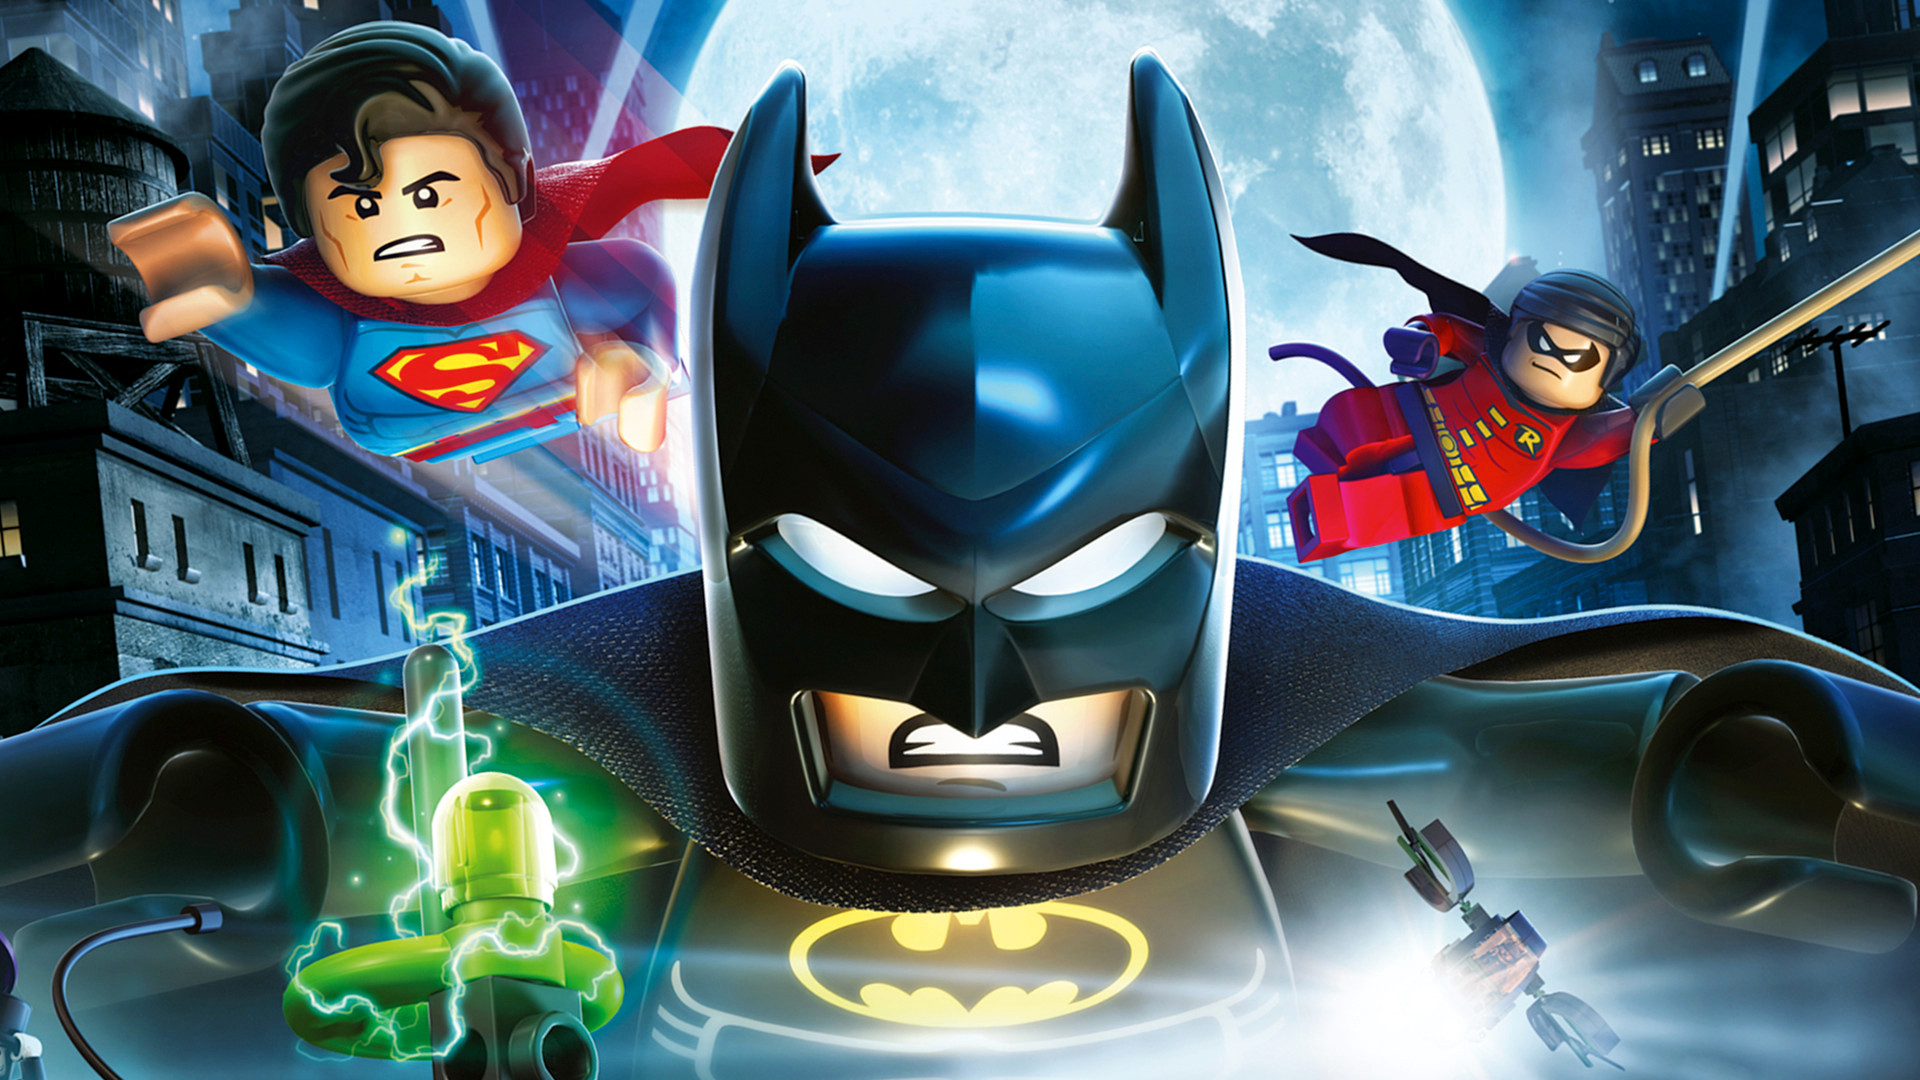 Descargar fondos de escritorio de Lego Batman: La Película Los Superhéroes De Dc Se Unen HD